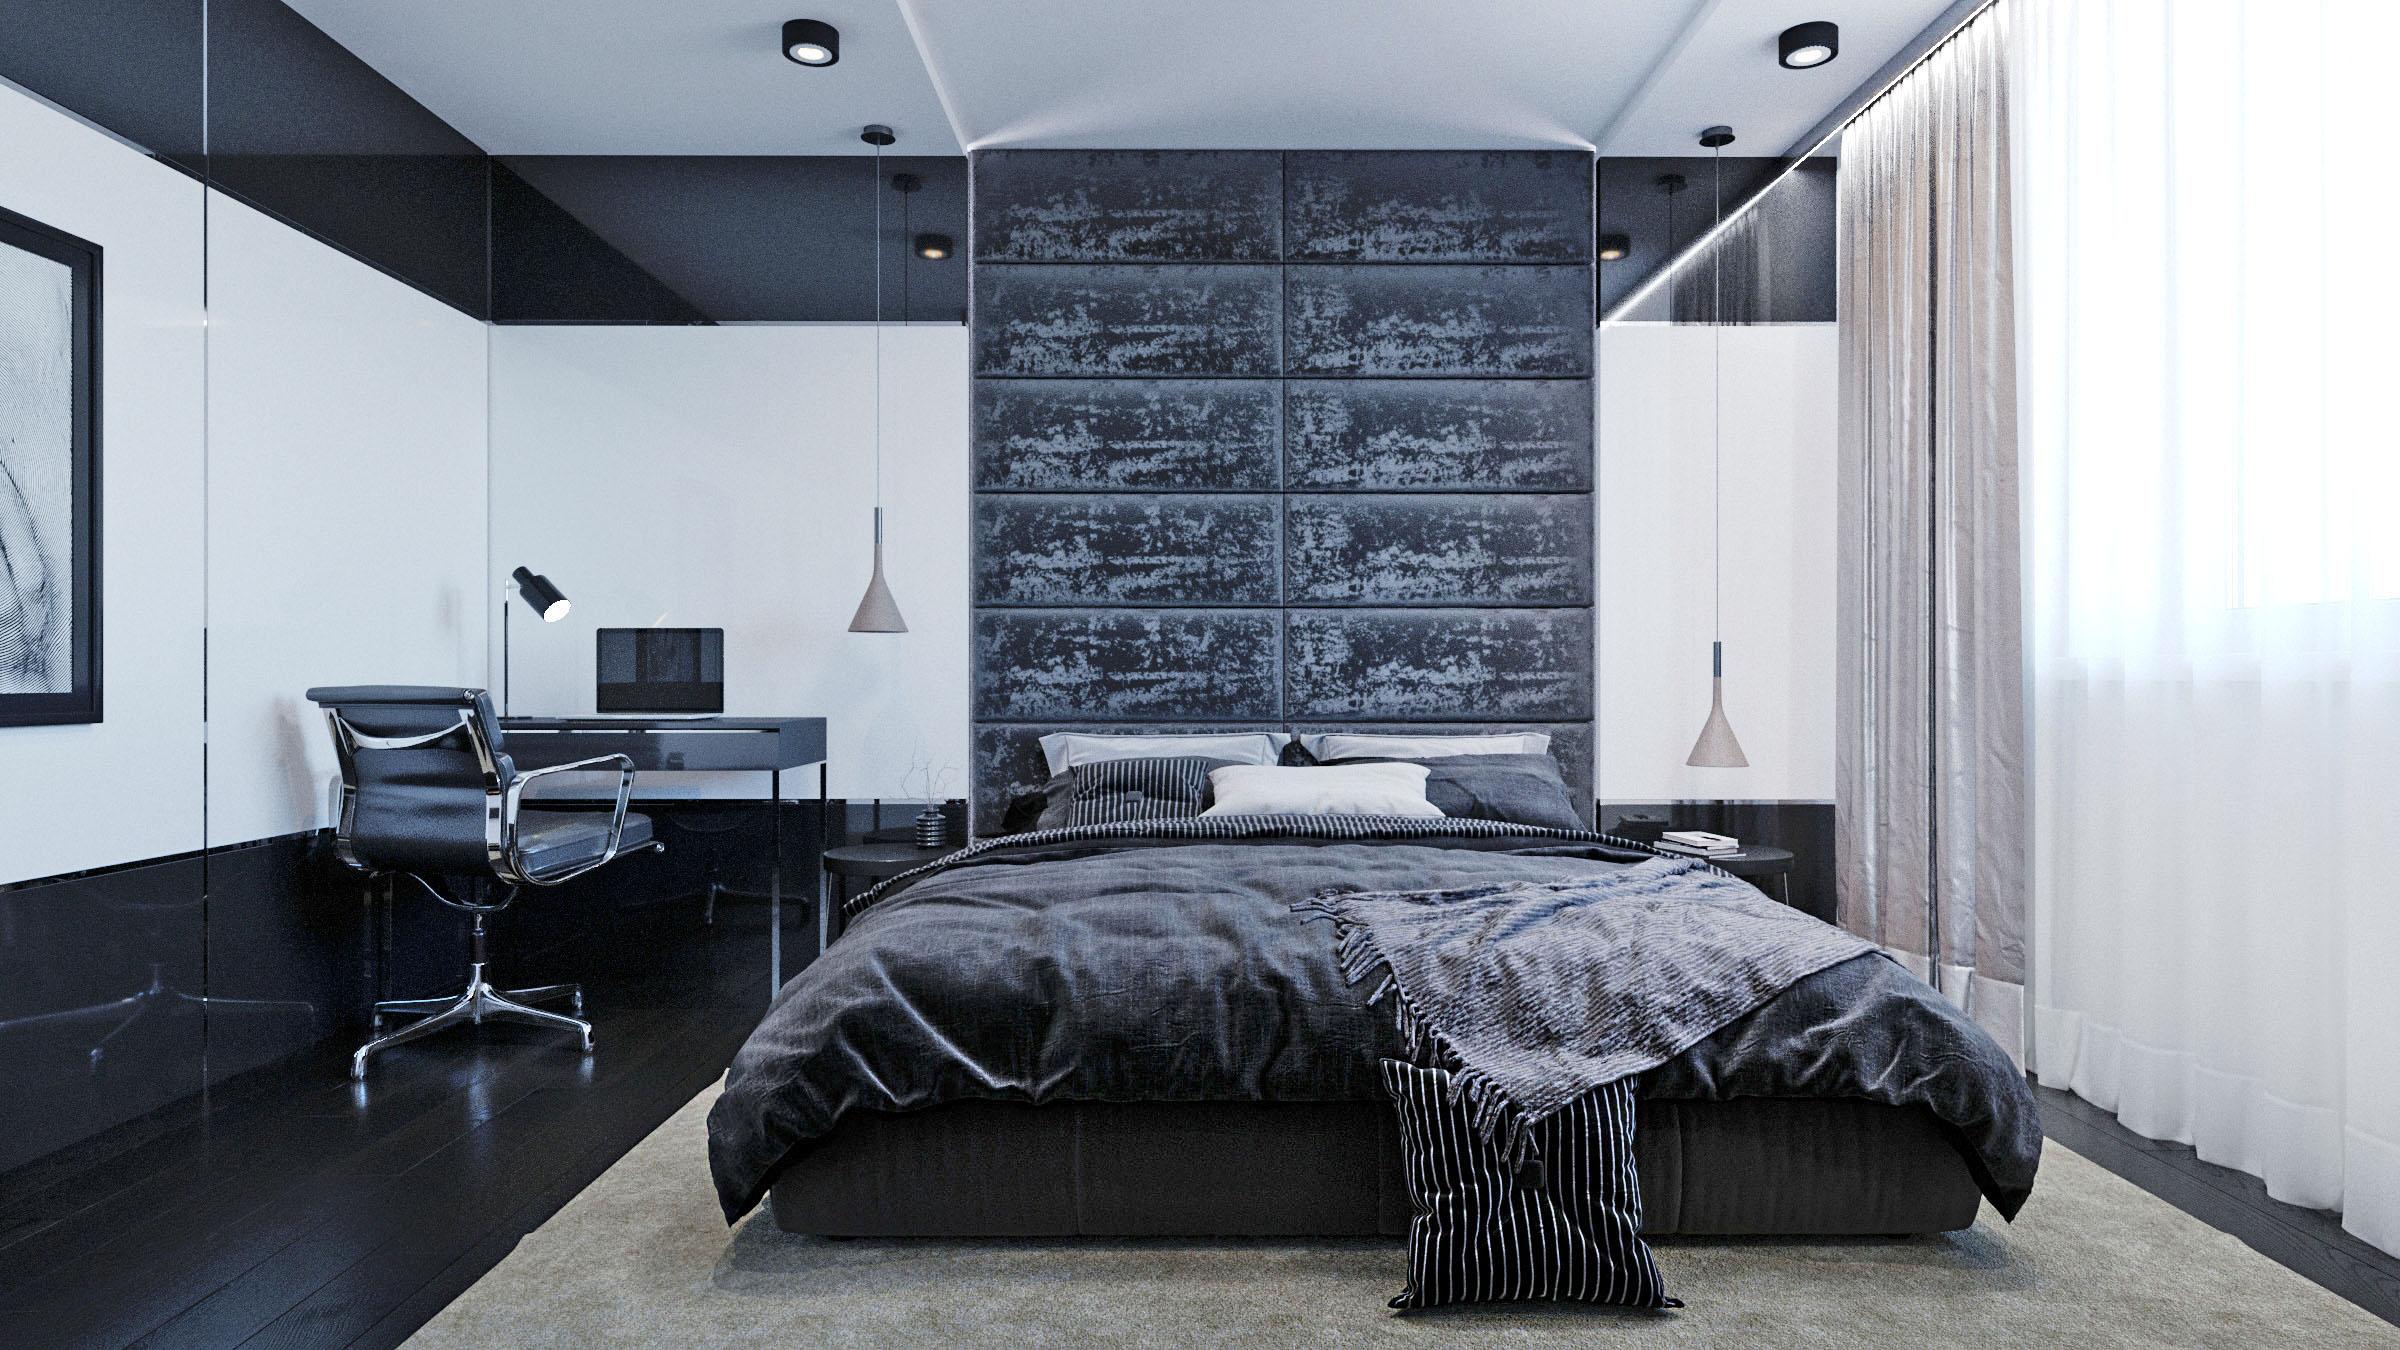 Интерьер спальни c рабочим местом и светильниками над кроватью в стиле лофт